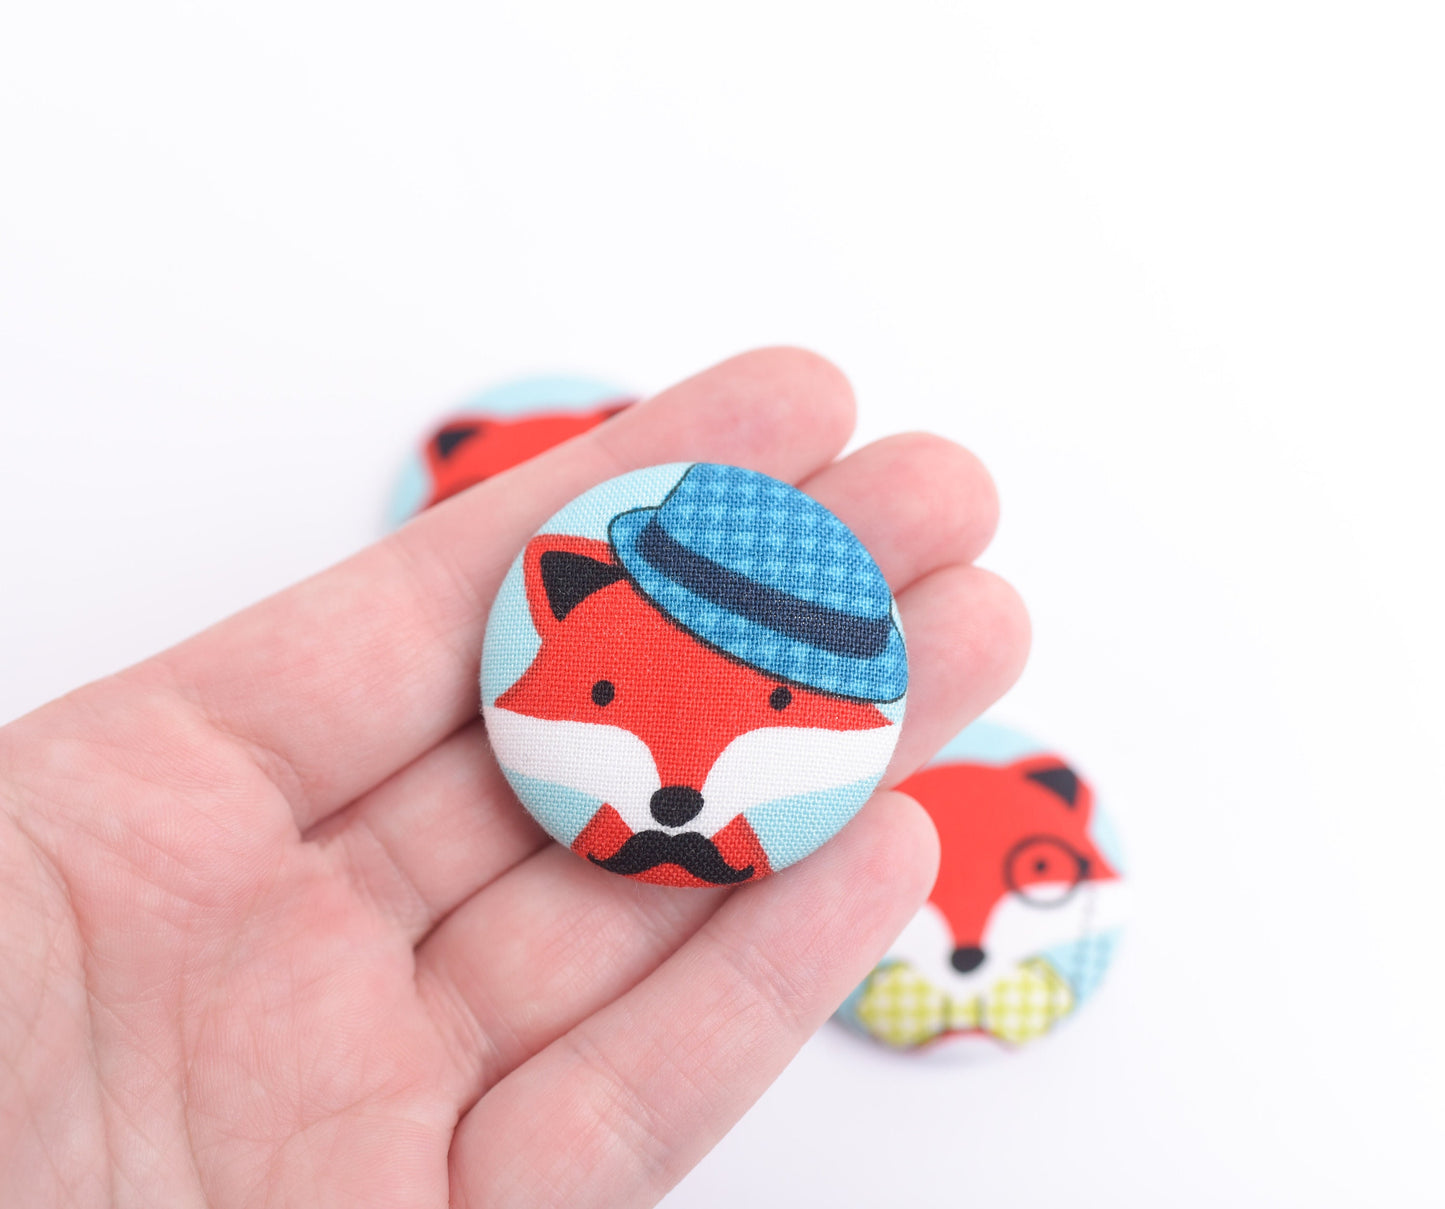 Dapper Fox Fabric Button Magnets- Set of 4